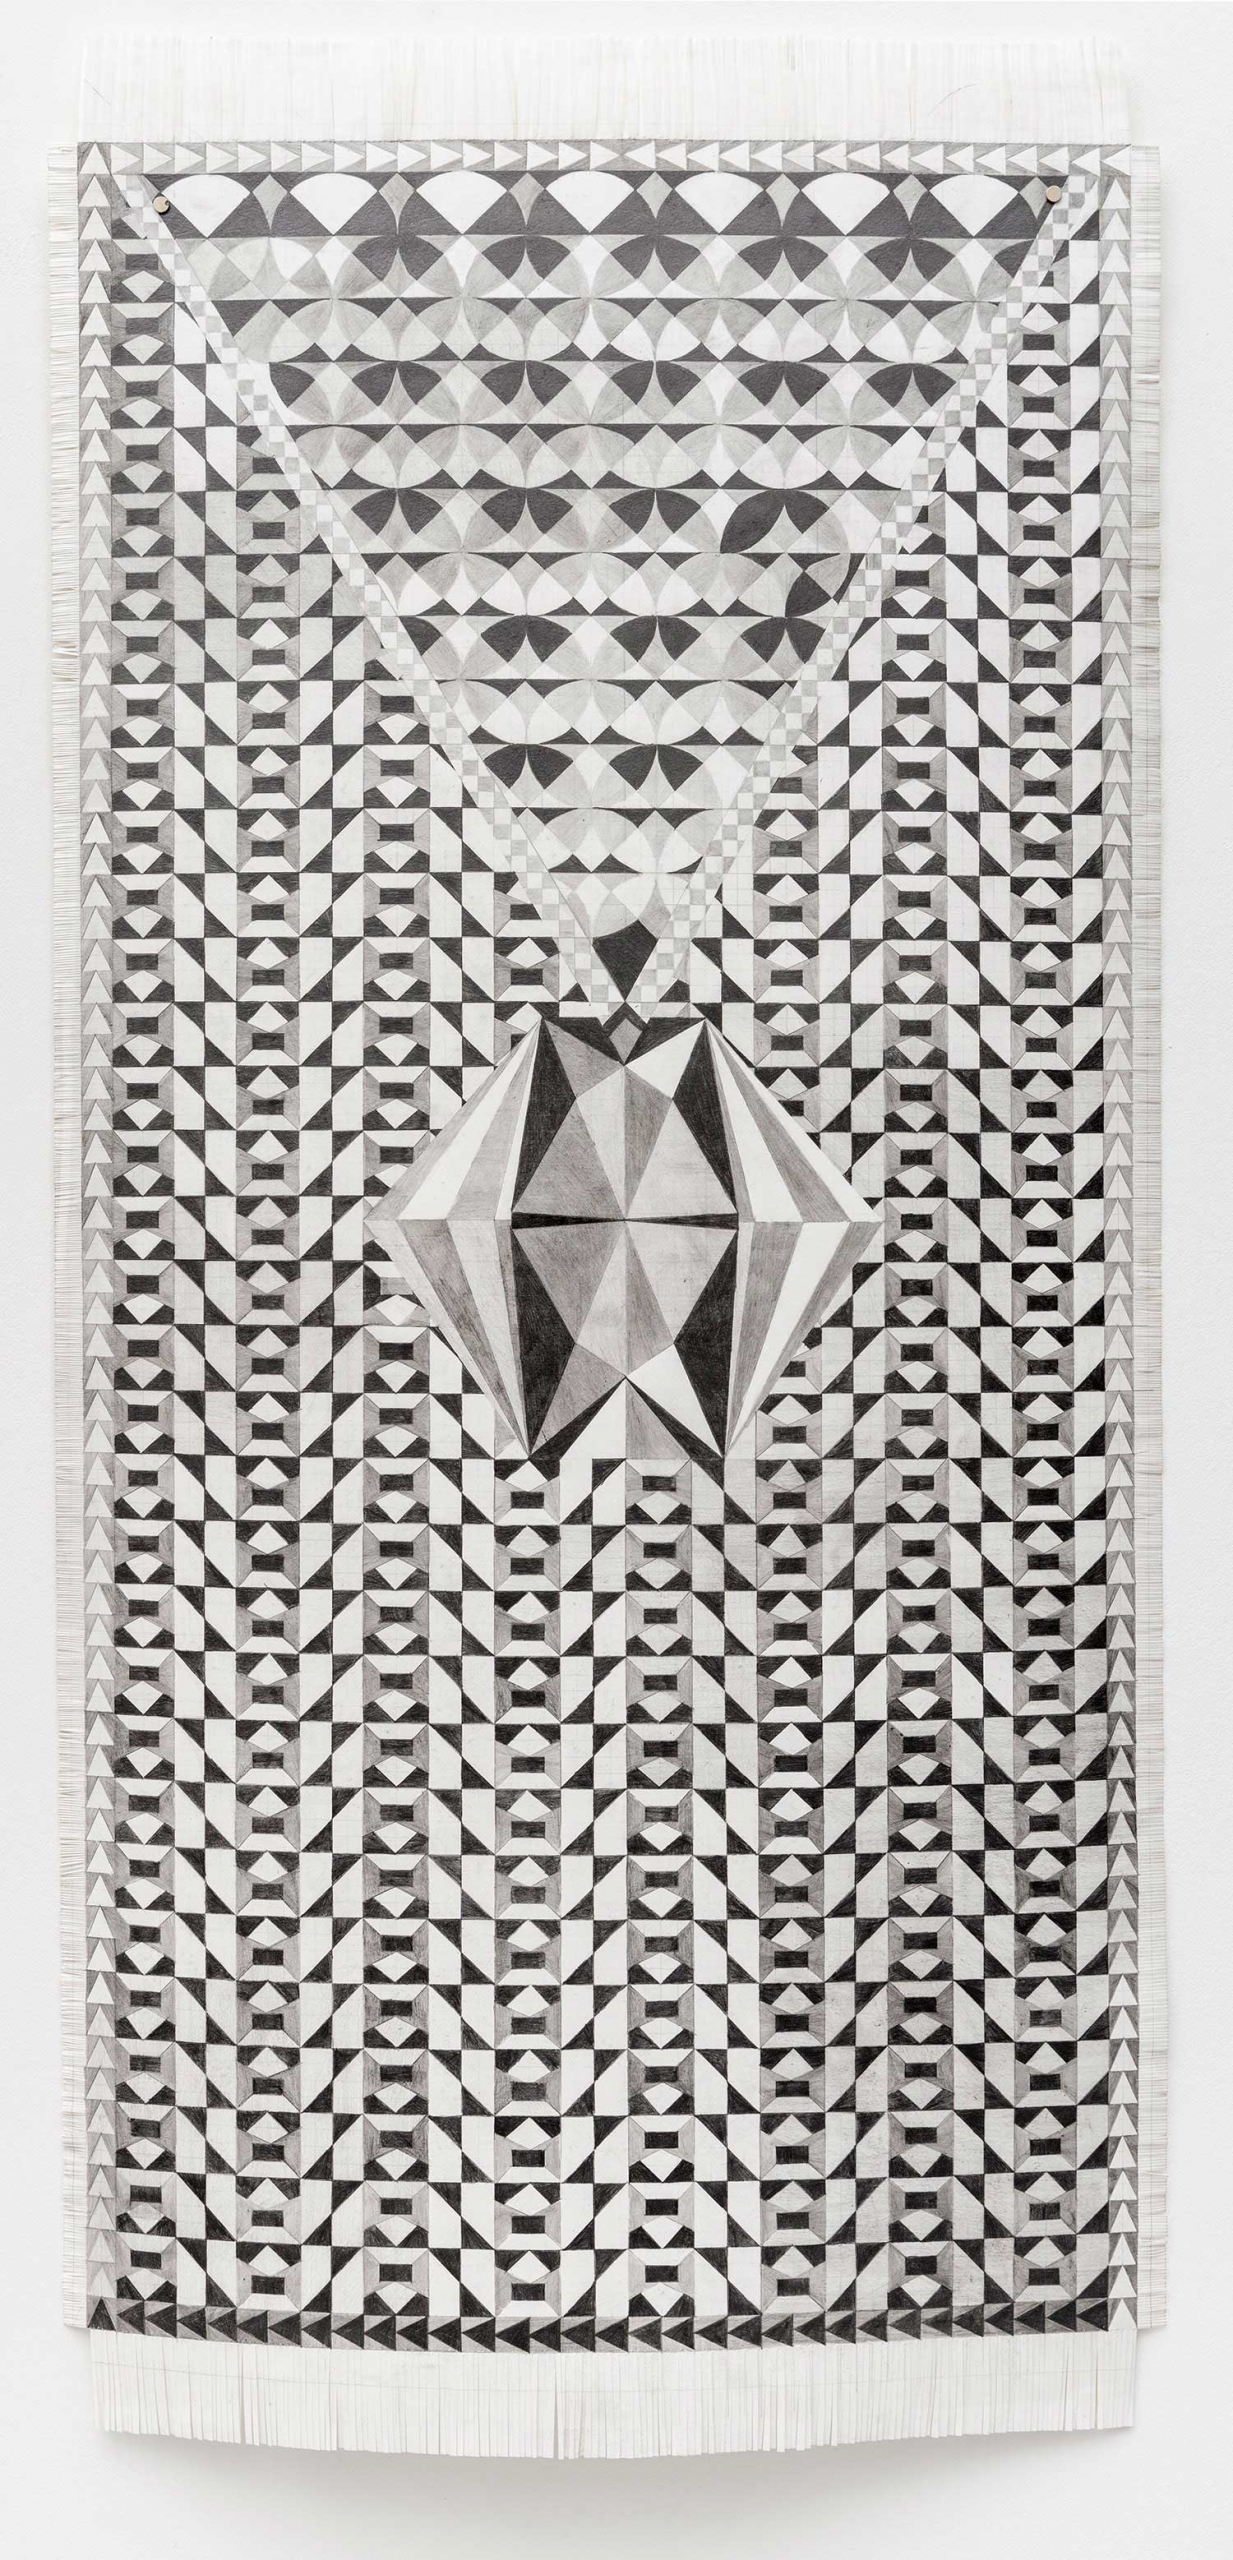 Maren Schimmer, „Die Sperrspitze der Regression“, 2022, 145 x 70 cm, Bleistift auf Papier, Foto Helge Mundt